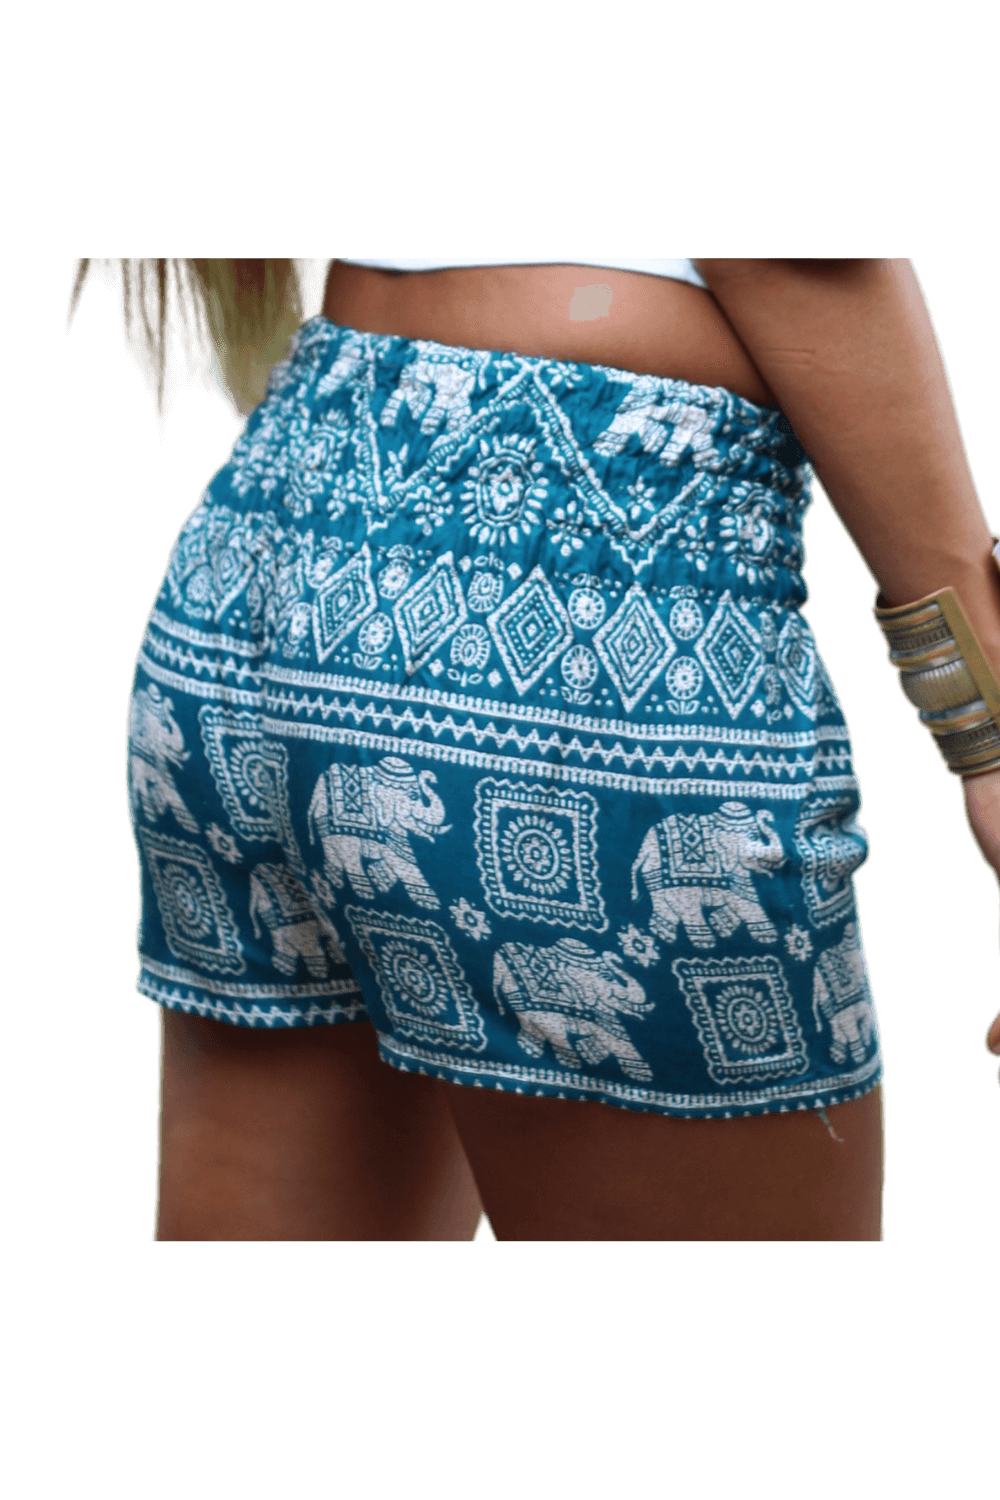 Turquoise Elephant hot pants. Bohemian style elephant shorts from Bohemian Island